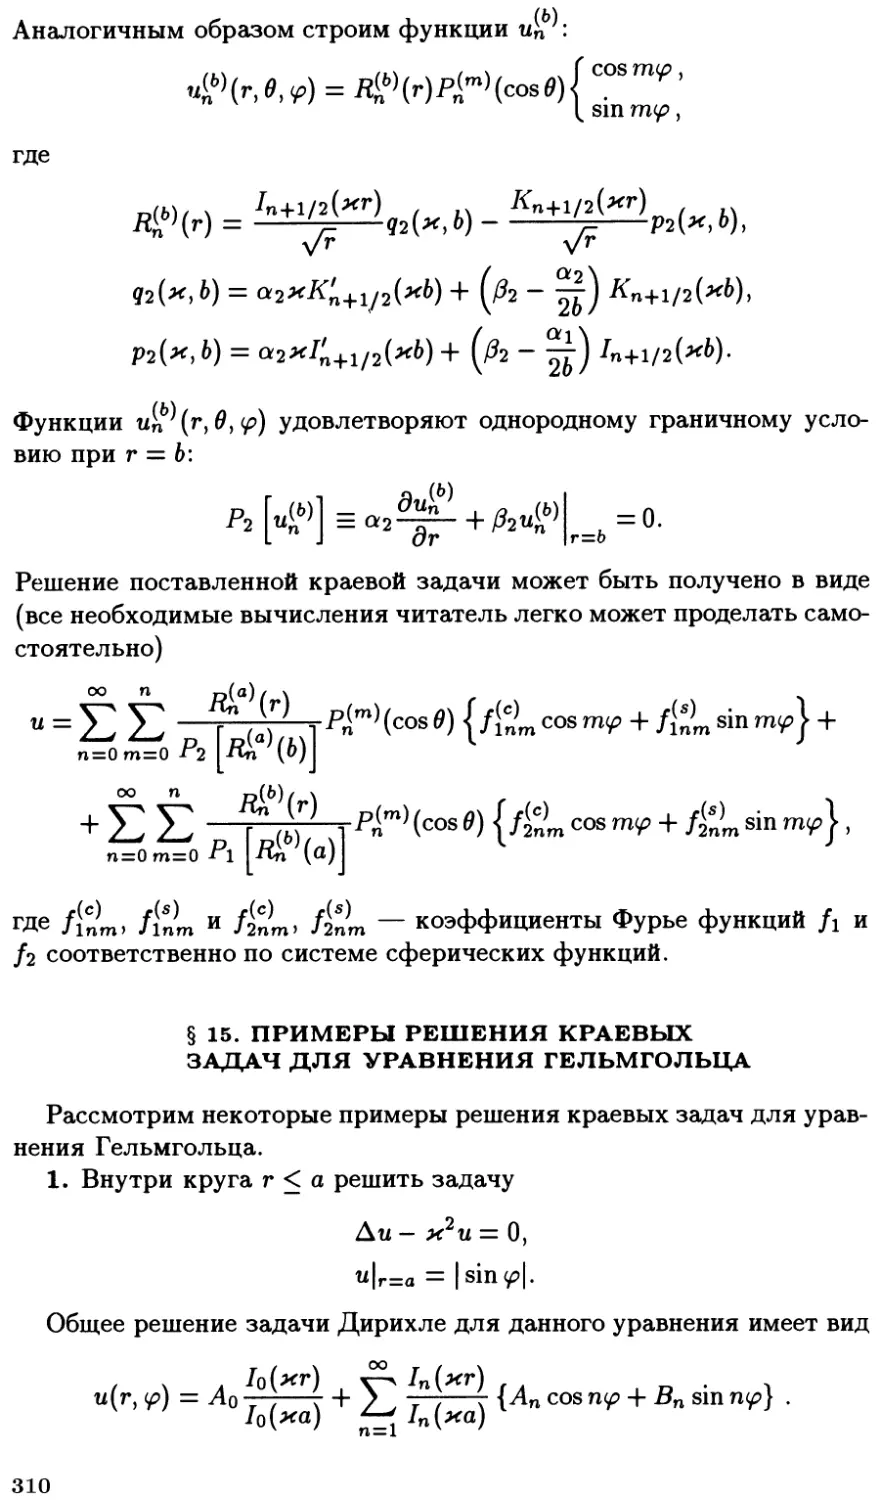 §15. Примеры решения краевых задач для уравнения Гельмгольца